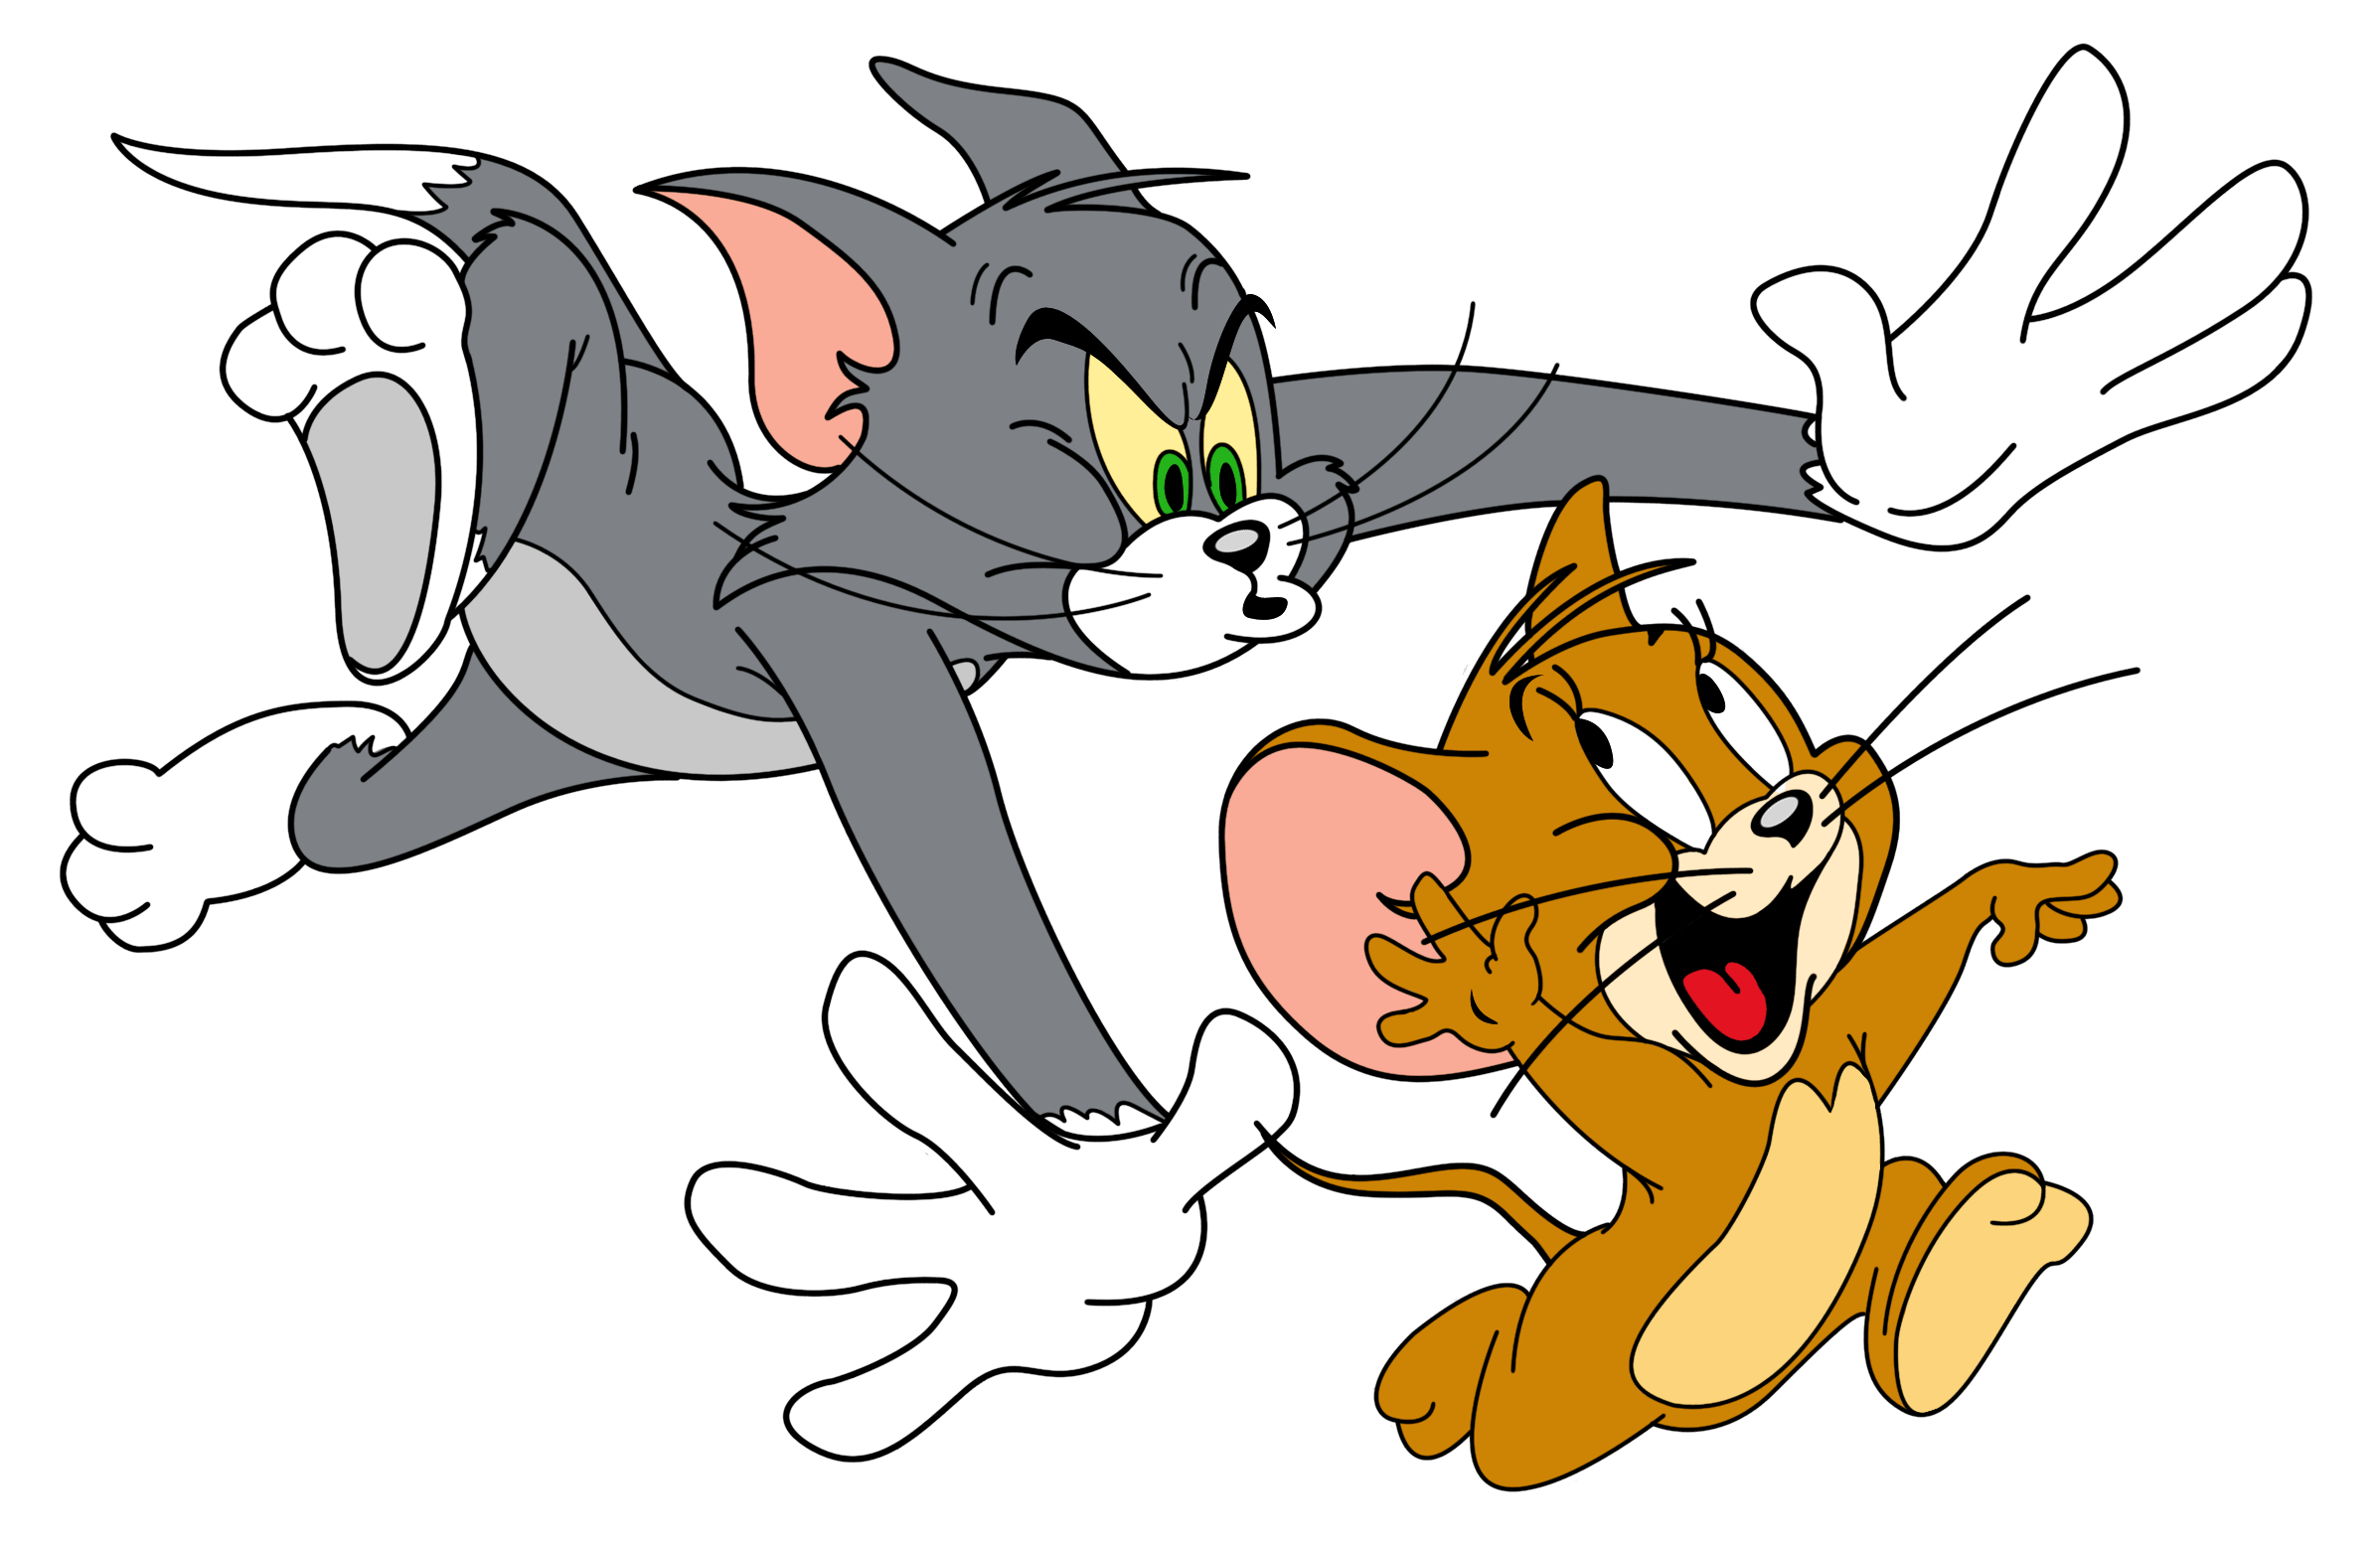 Три джерри. Tom and Jerry. Том и Джерри (Tom and Jerry) 1940. Tom and Jerry cartoon. Том и Джерри 1997.